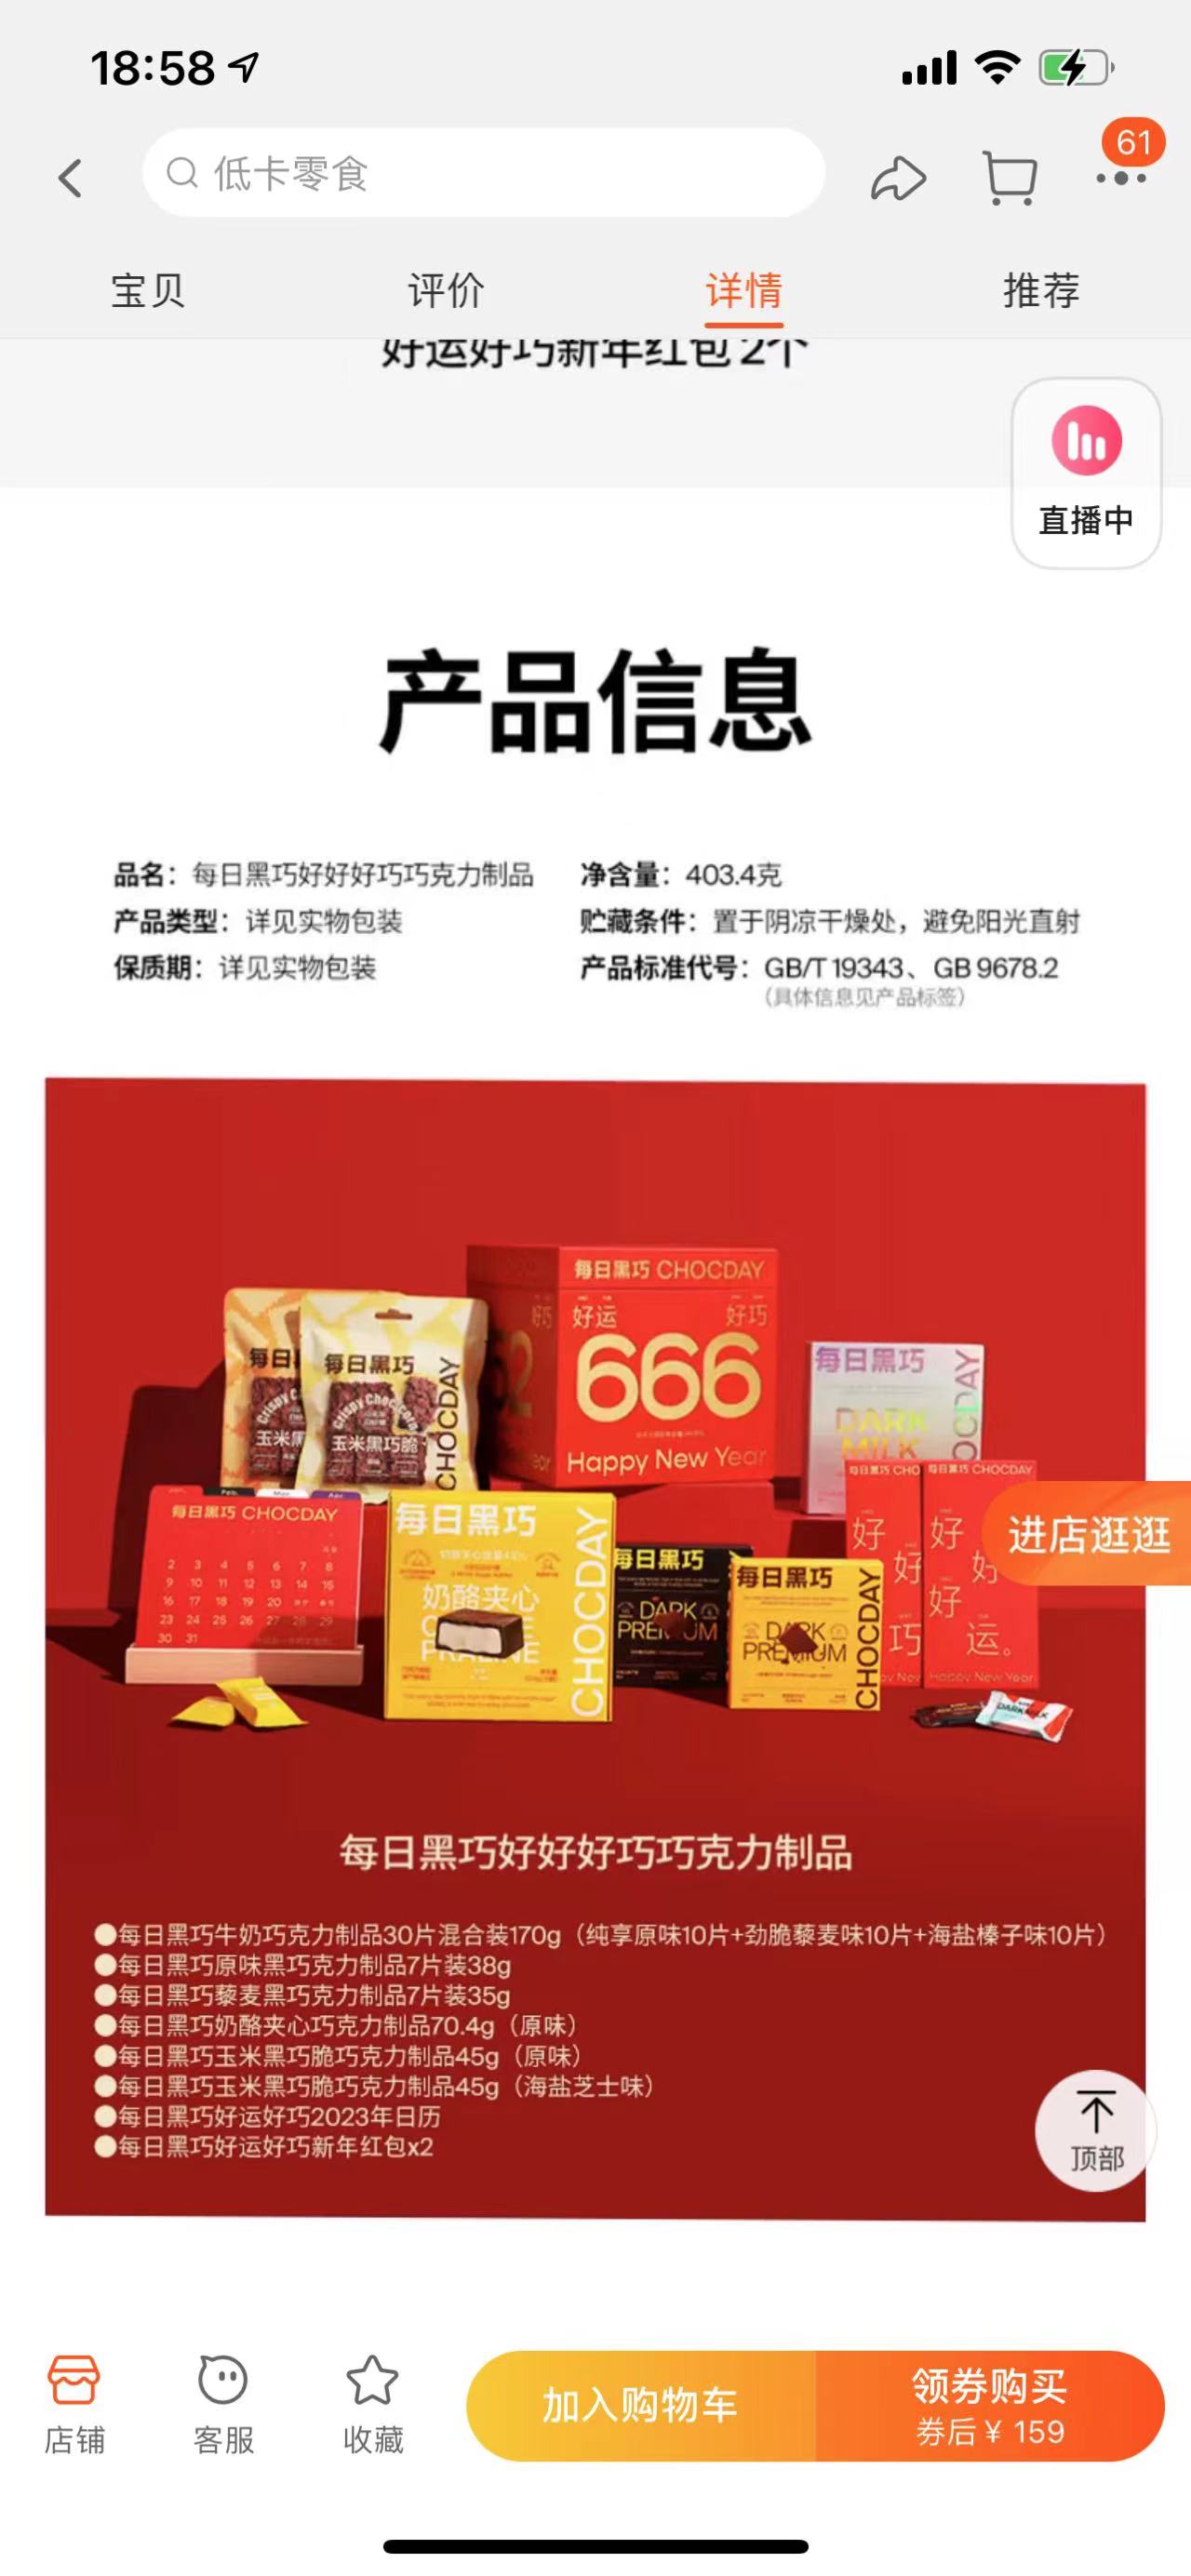 “每日黑巧好好好巧巧克力”礼盒在电商平台依然有售。资料图片